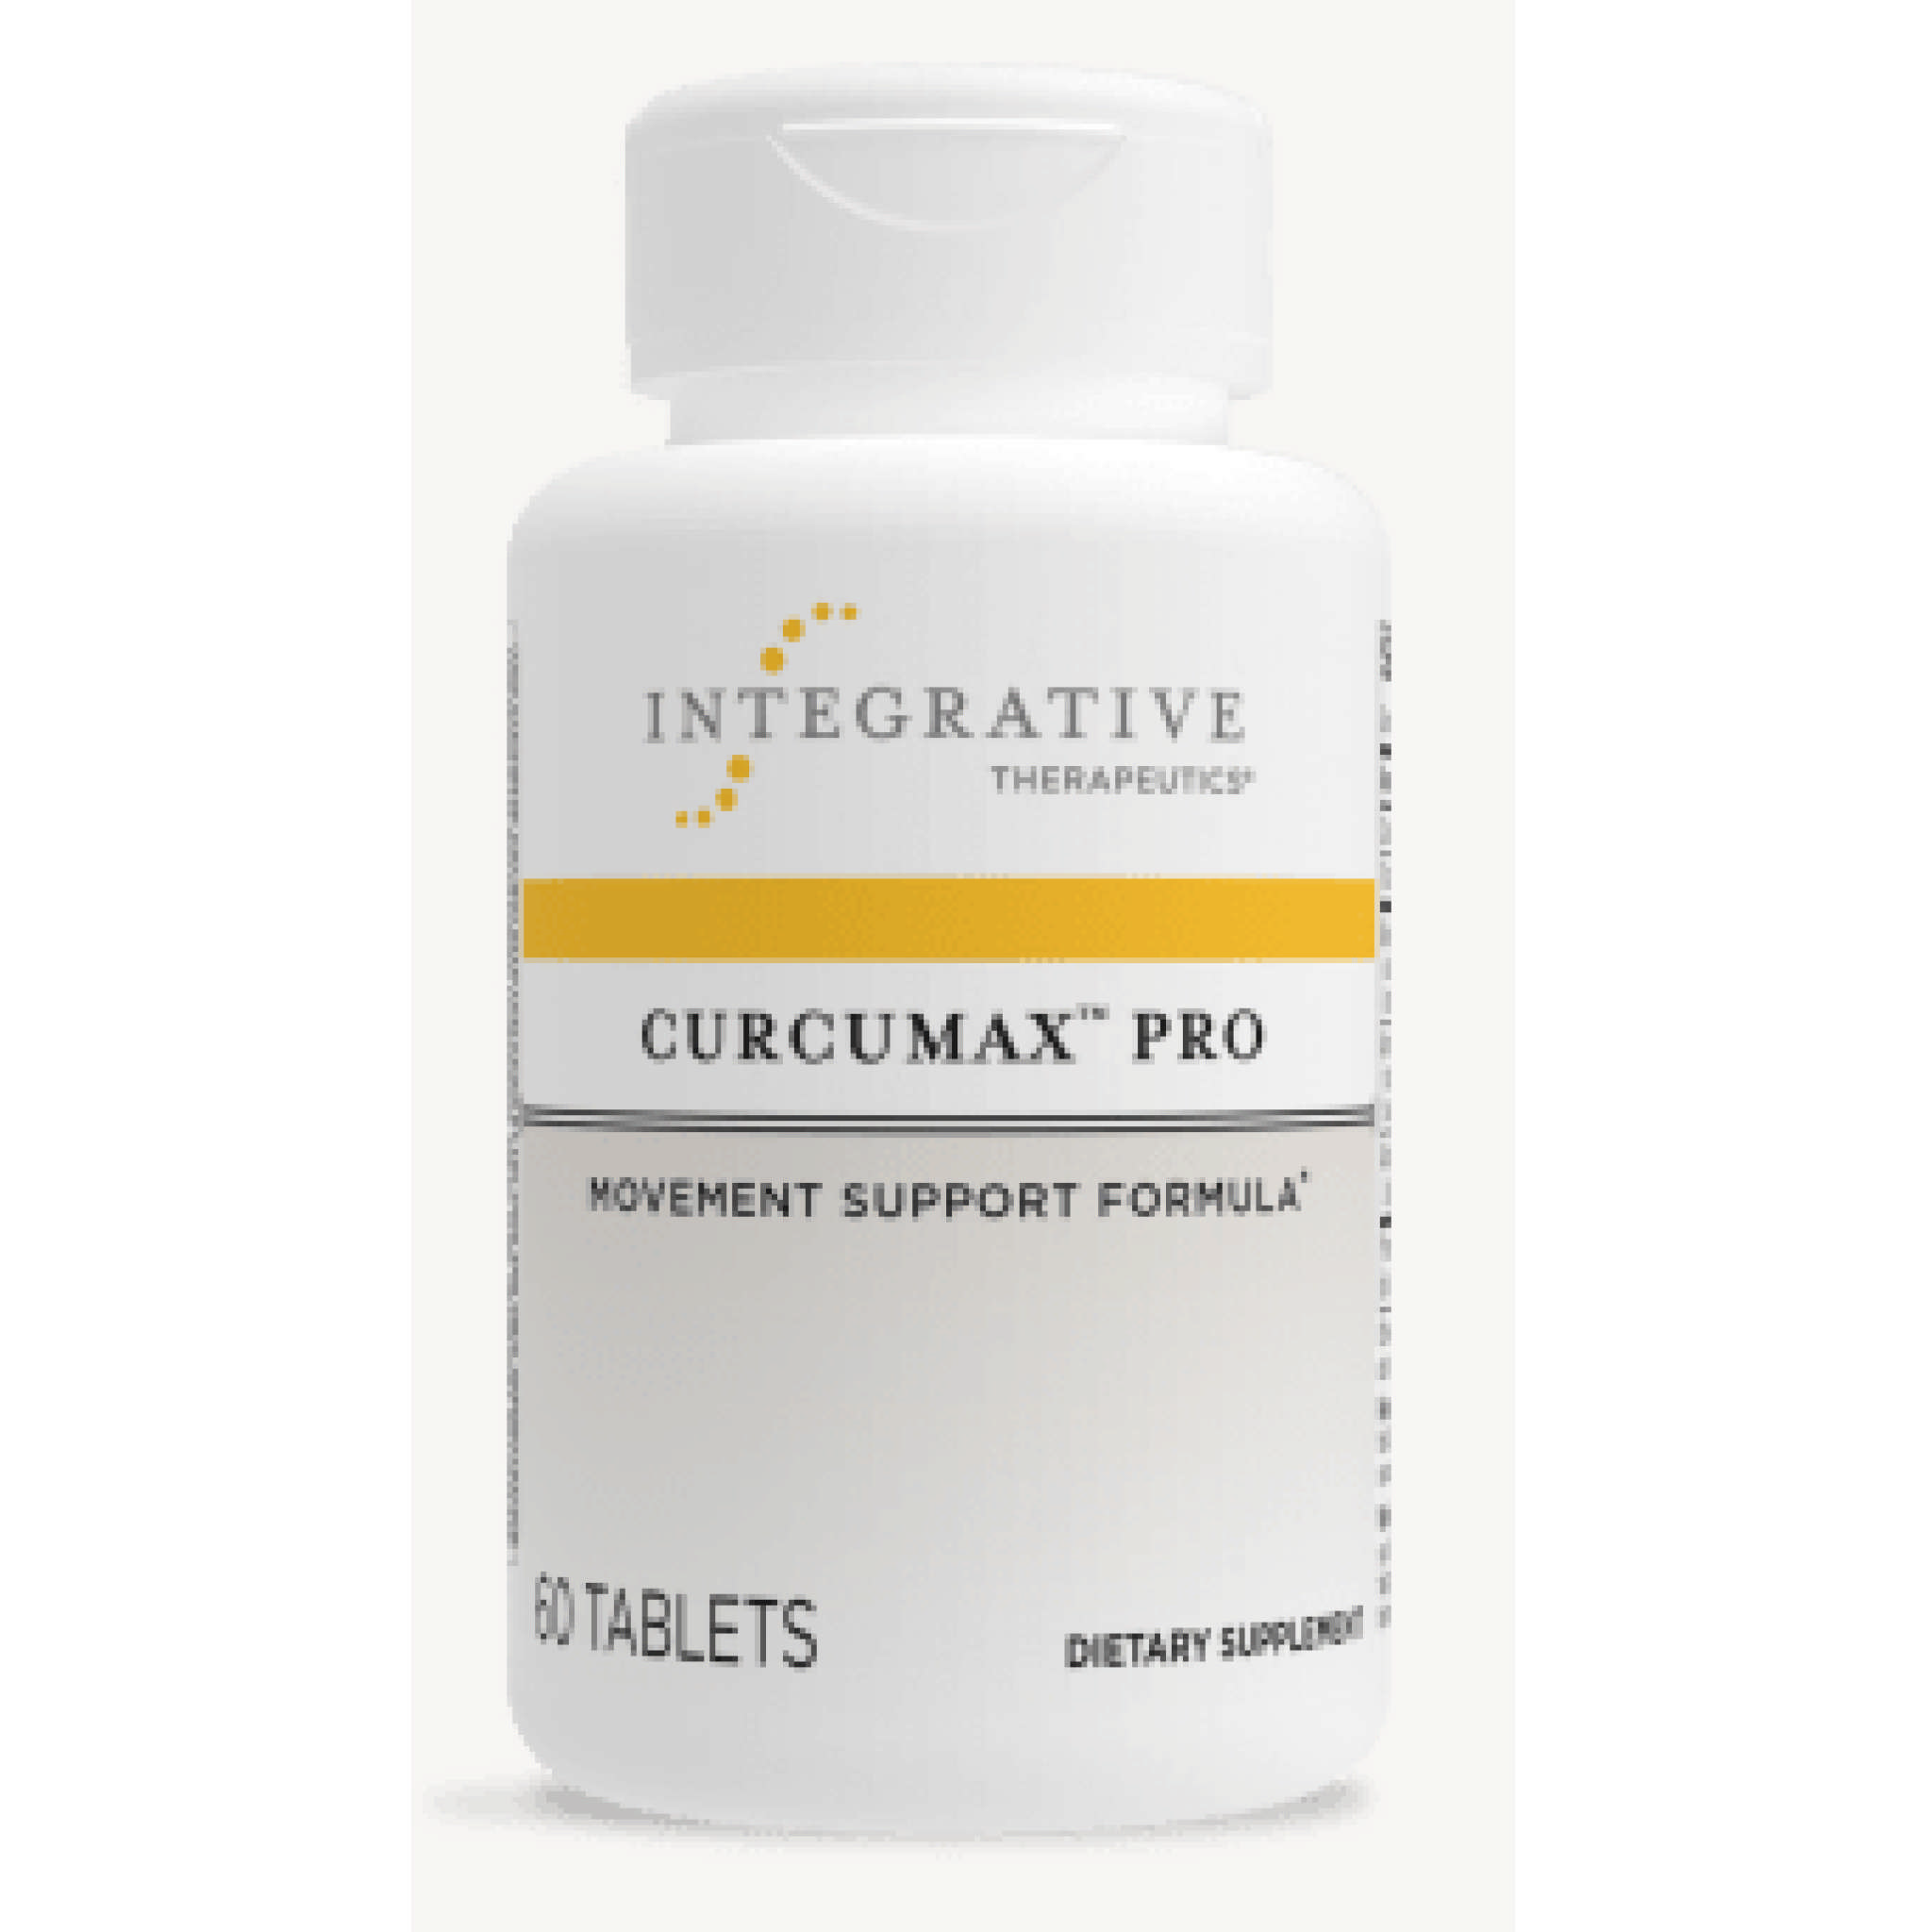 Integrative Therapy - Curcumax Pro